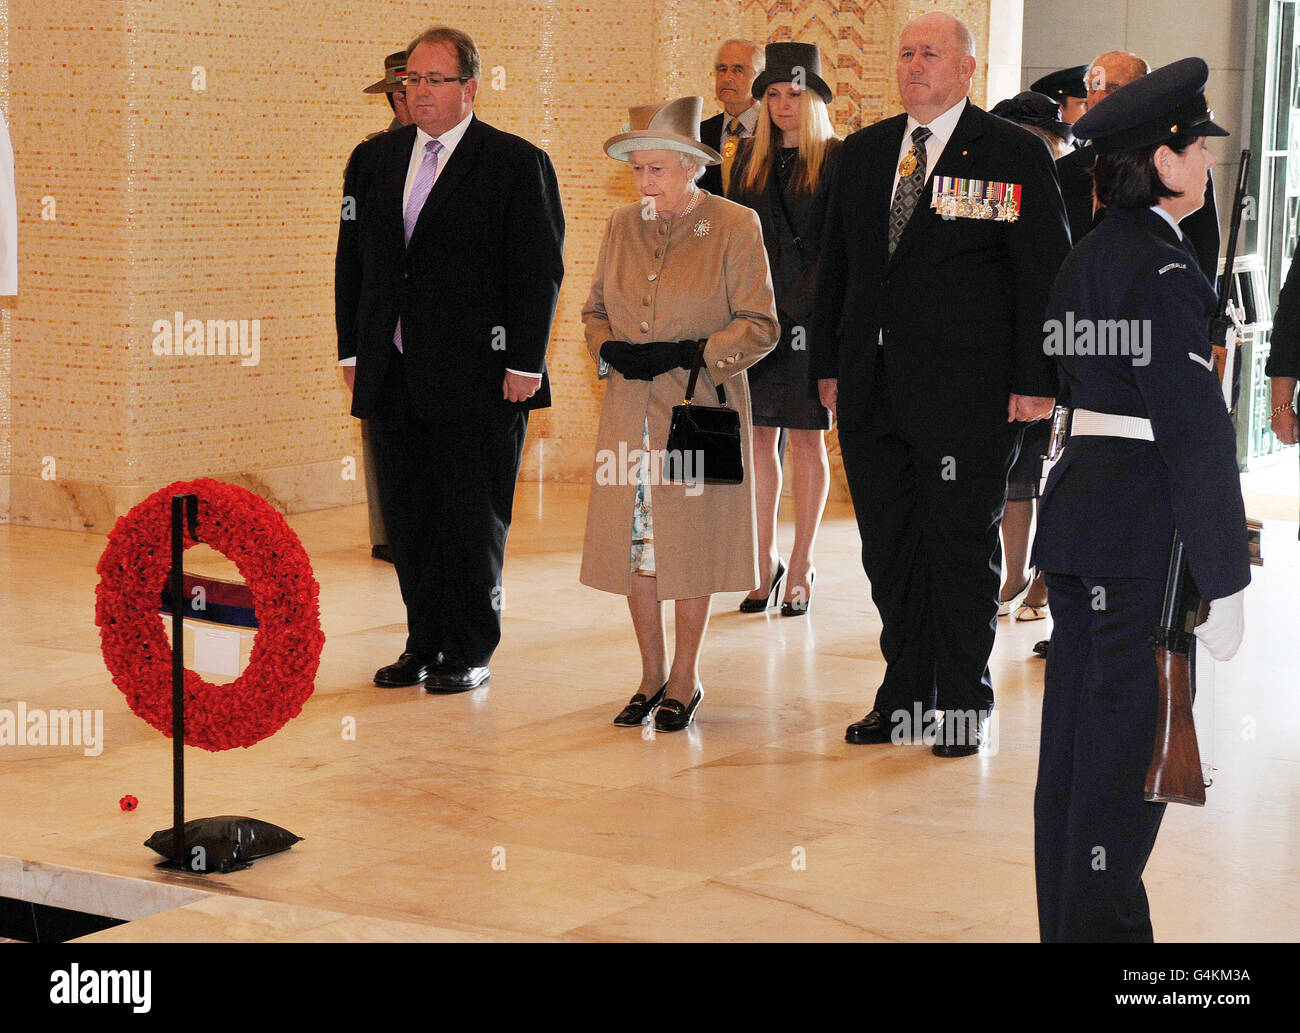 La Regina Elisabetta II della Gran Bretagna rappresenta un minuto di silenzio dopo aver deposto una corona alla Tomba dell'ignoto Solider, al Monumento di Guerra Australiano nella capitale Canberra, nel sud-est dell'Australia. Foto Stock